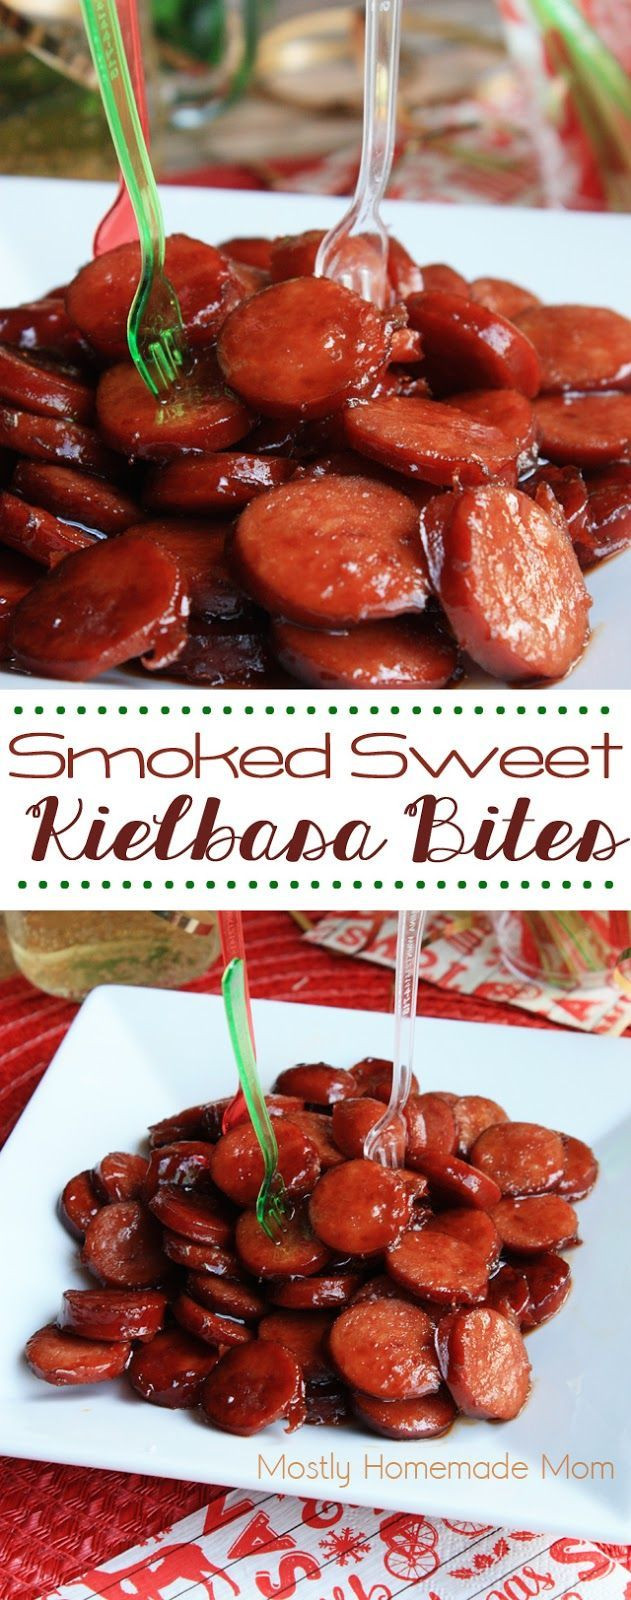 Christmas Appetizers 2018
 Smoked Sweet Kielbasa Bites – Sliced smoked kielbasa